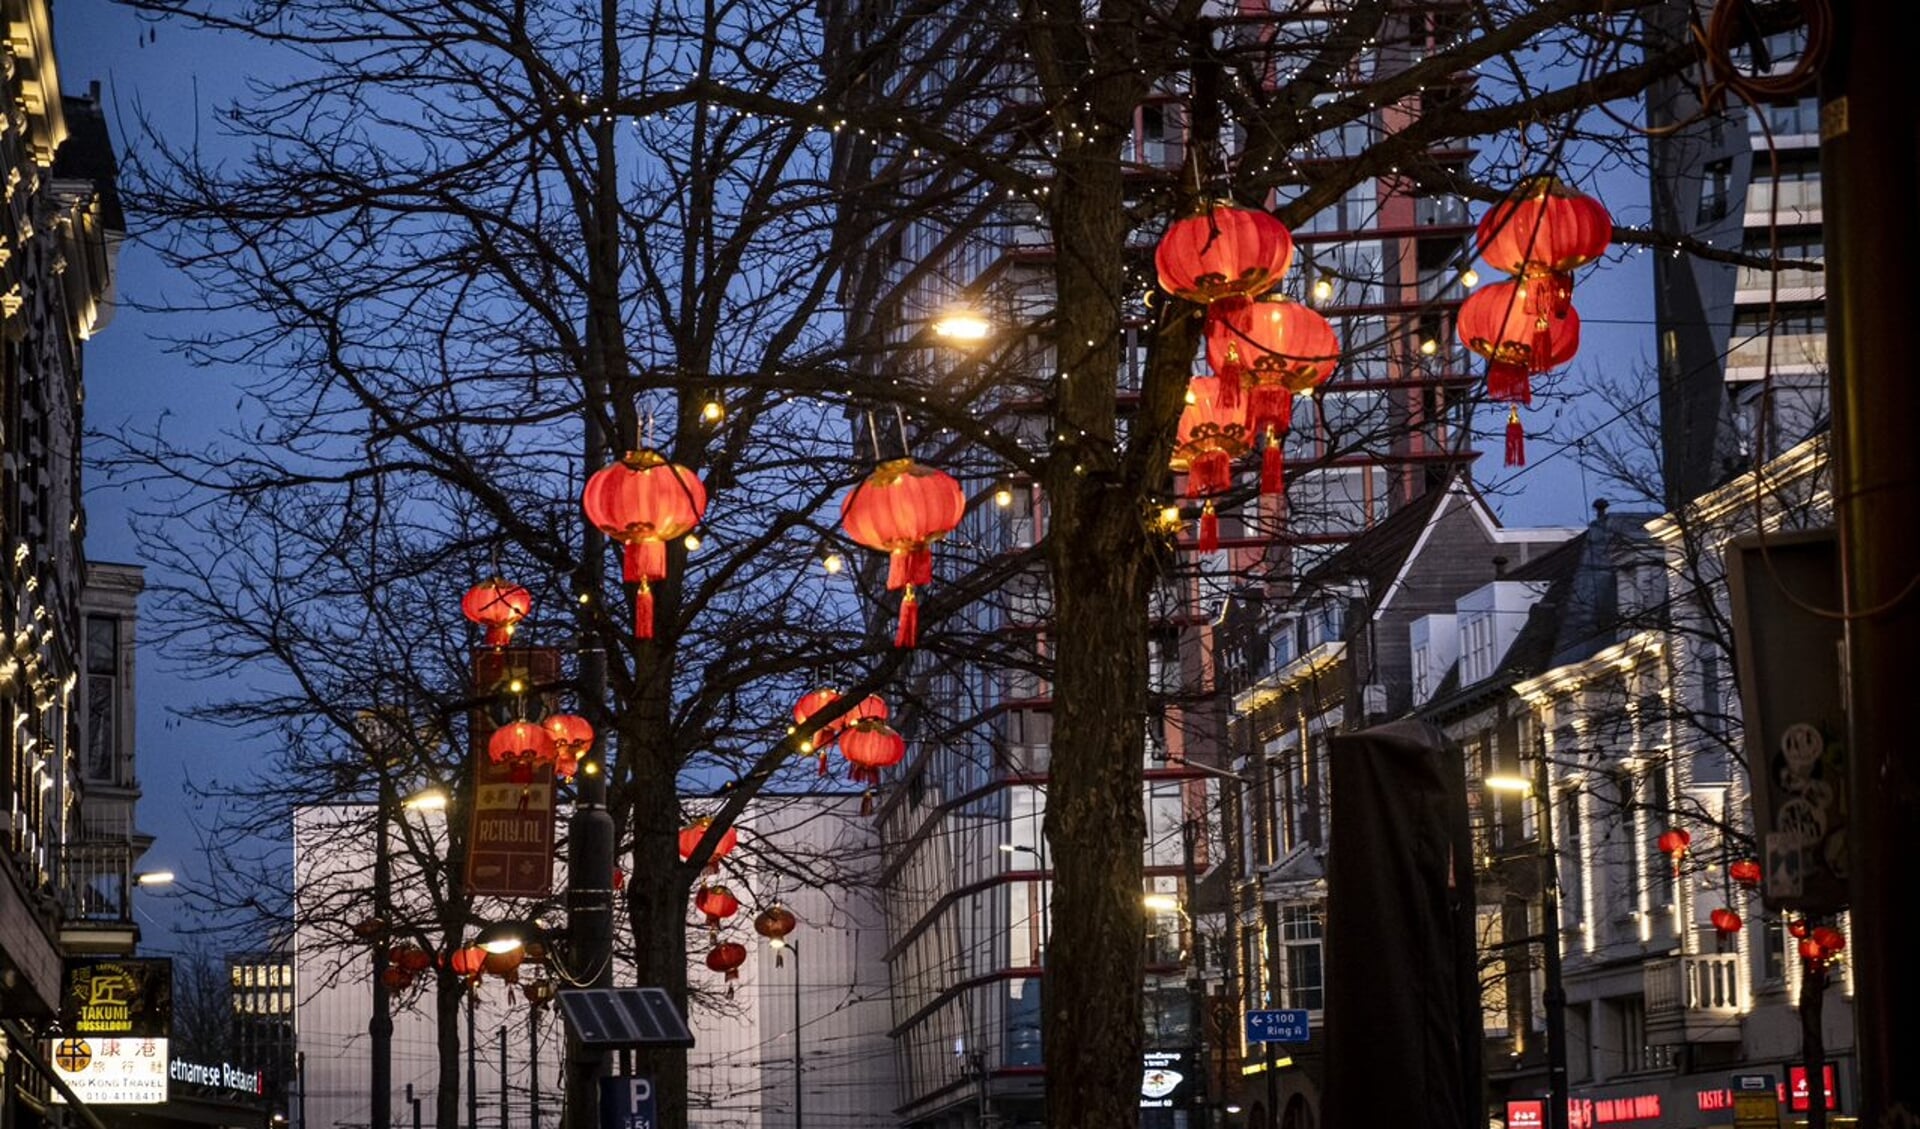 Honderden lampionnen en rood-gouden banieren vrolijken de West-Kruiskade en het Kruisplein op en brengen een beetje extra licht en warmte in het winterse Rotterdam. 